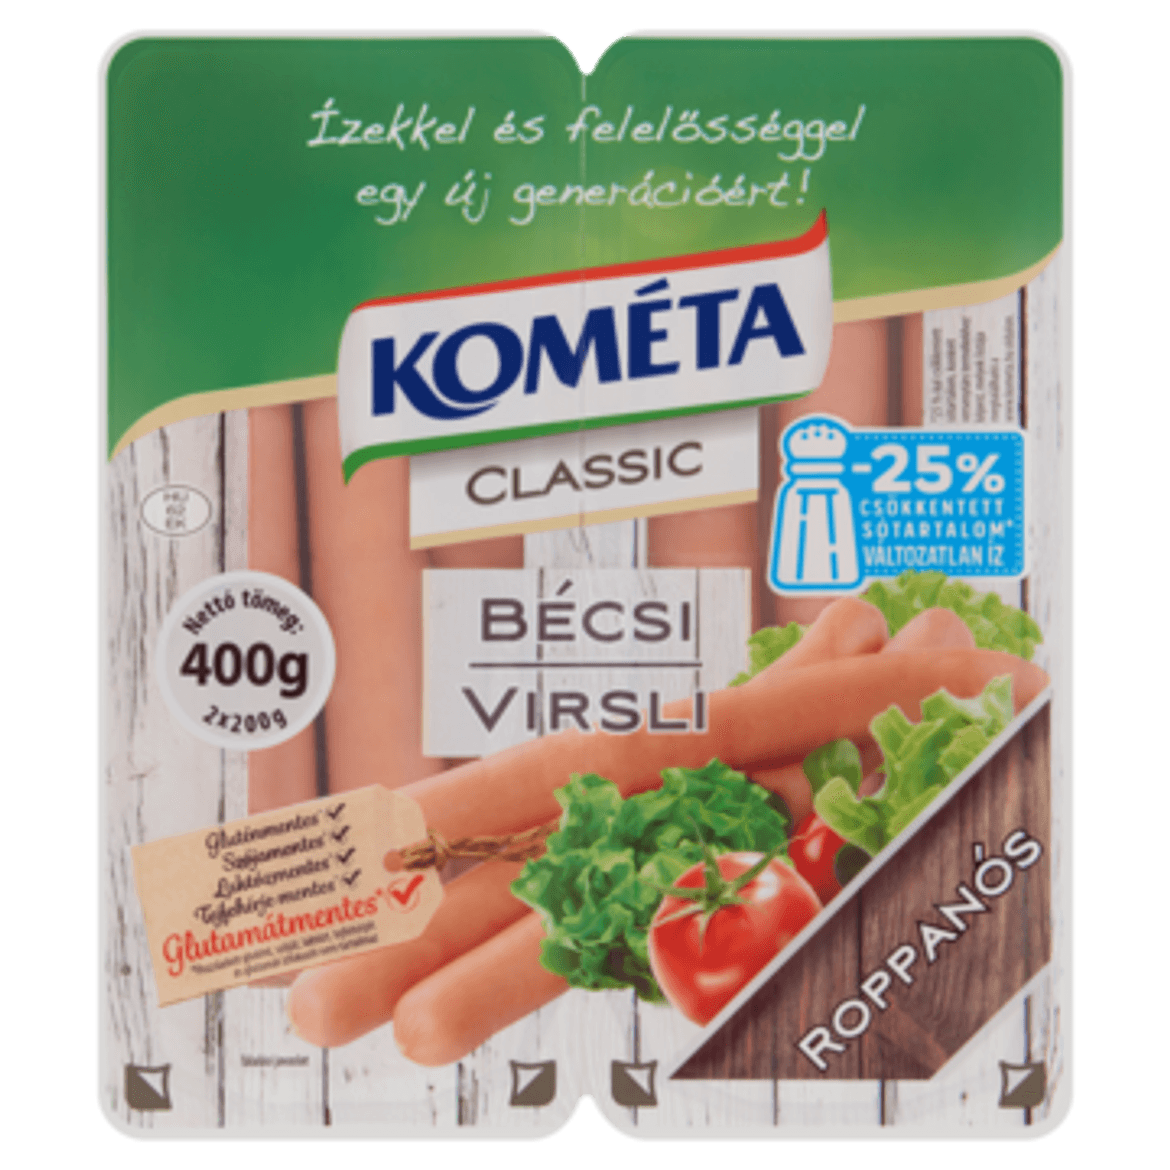 Kométa Classic Bécsi virsli